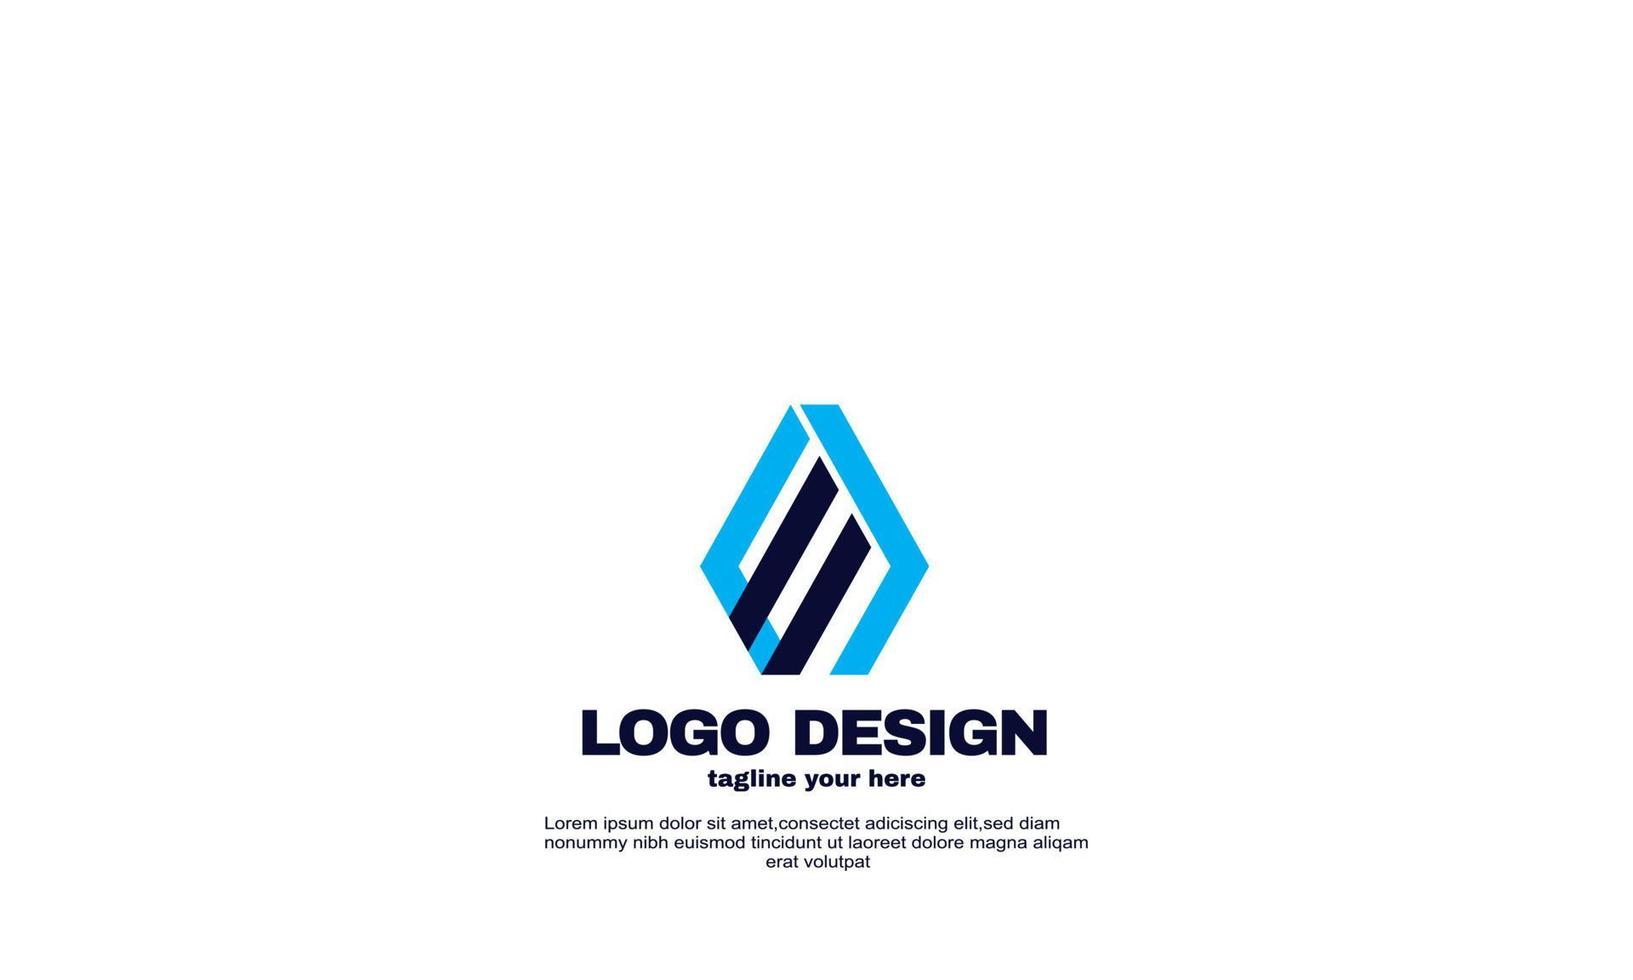 Idée créative abstraite meilleur élégant coloré entreprise entreprise logo design vecteur couleur bleu marine